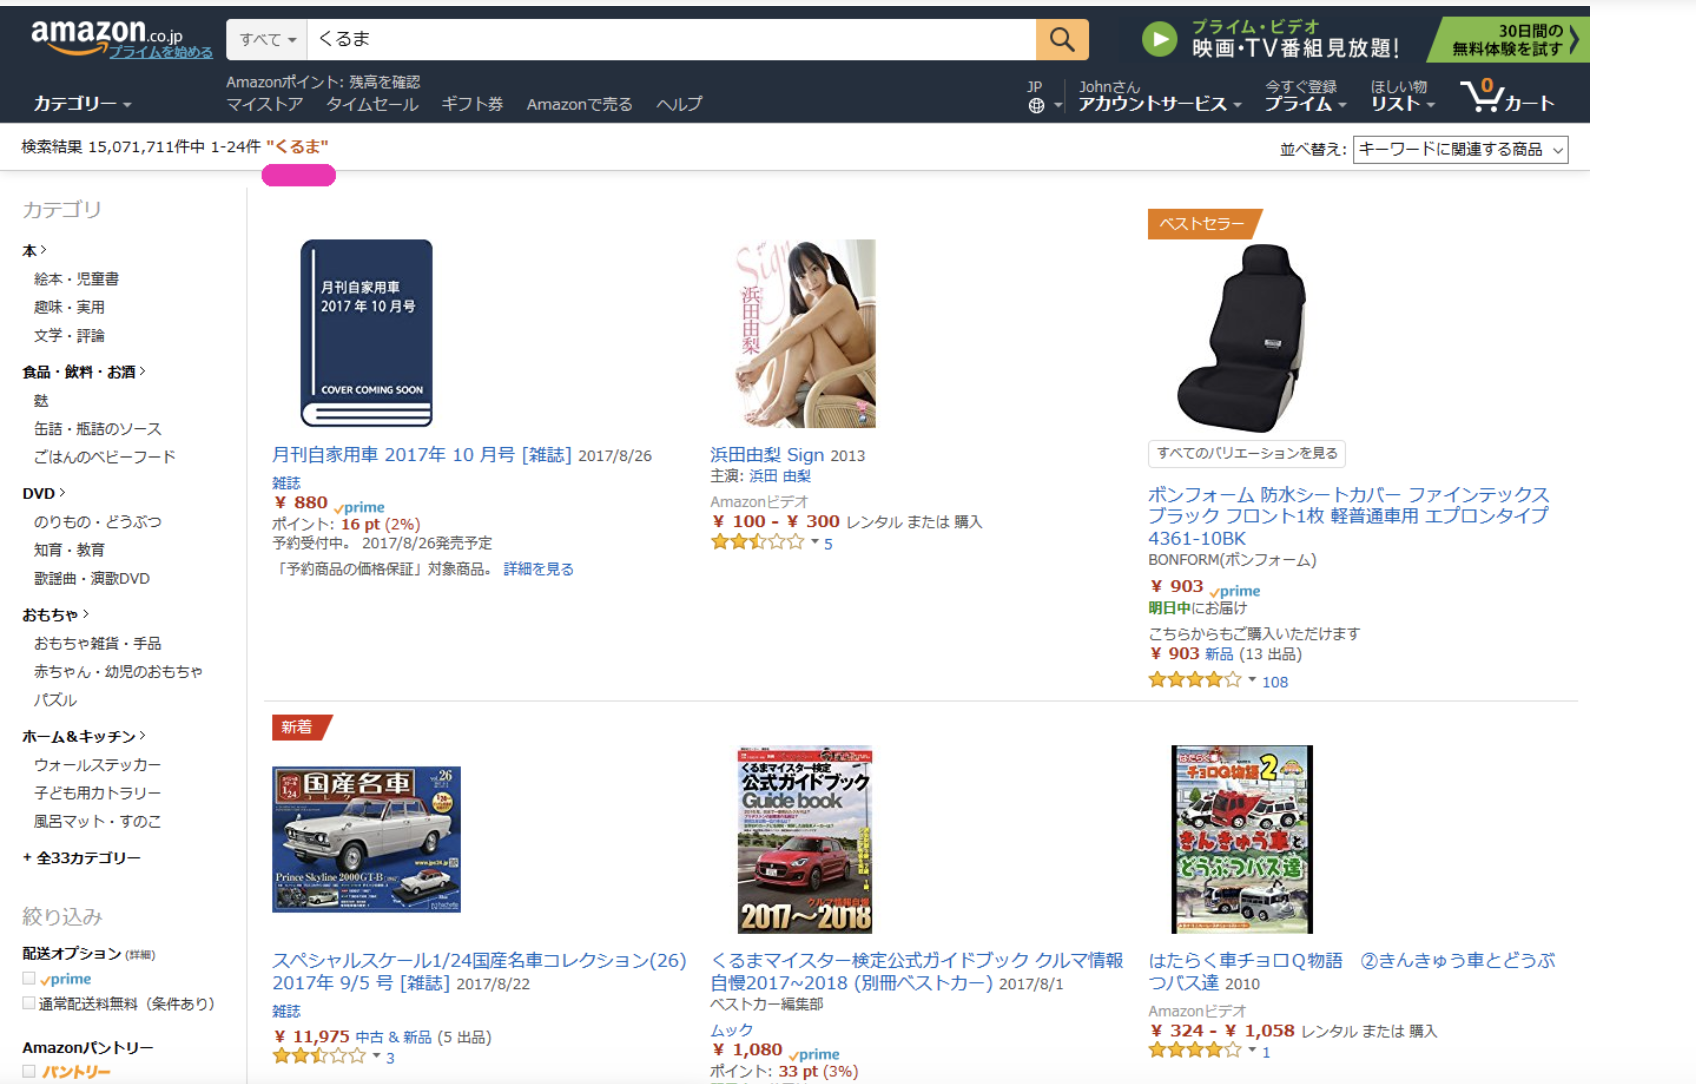 amazon product image- selling on Amazon japan